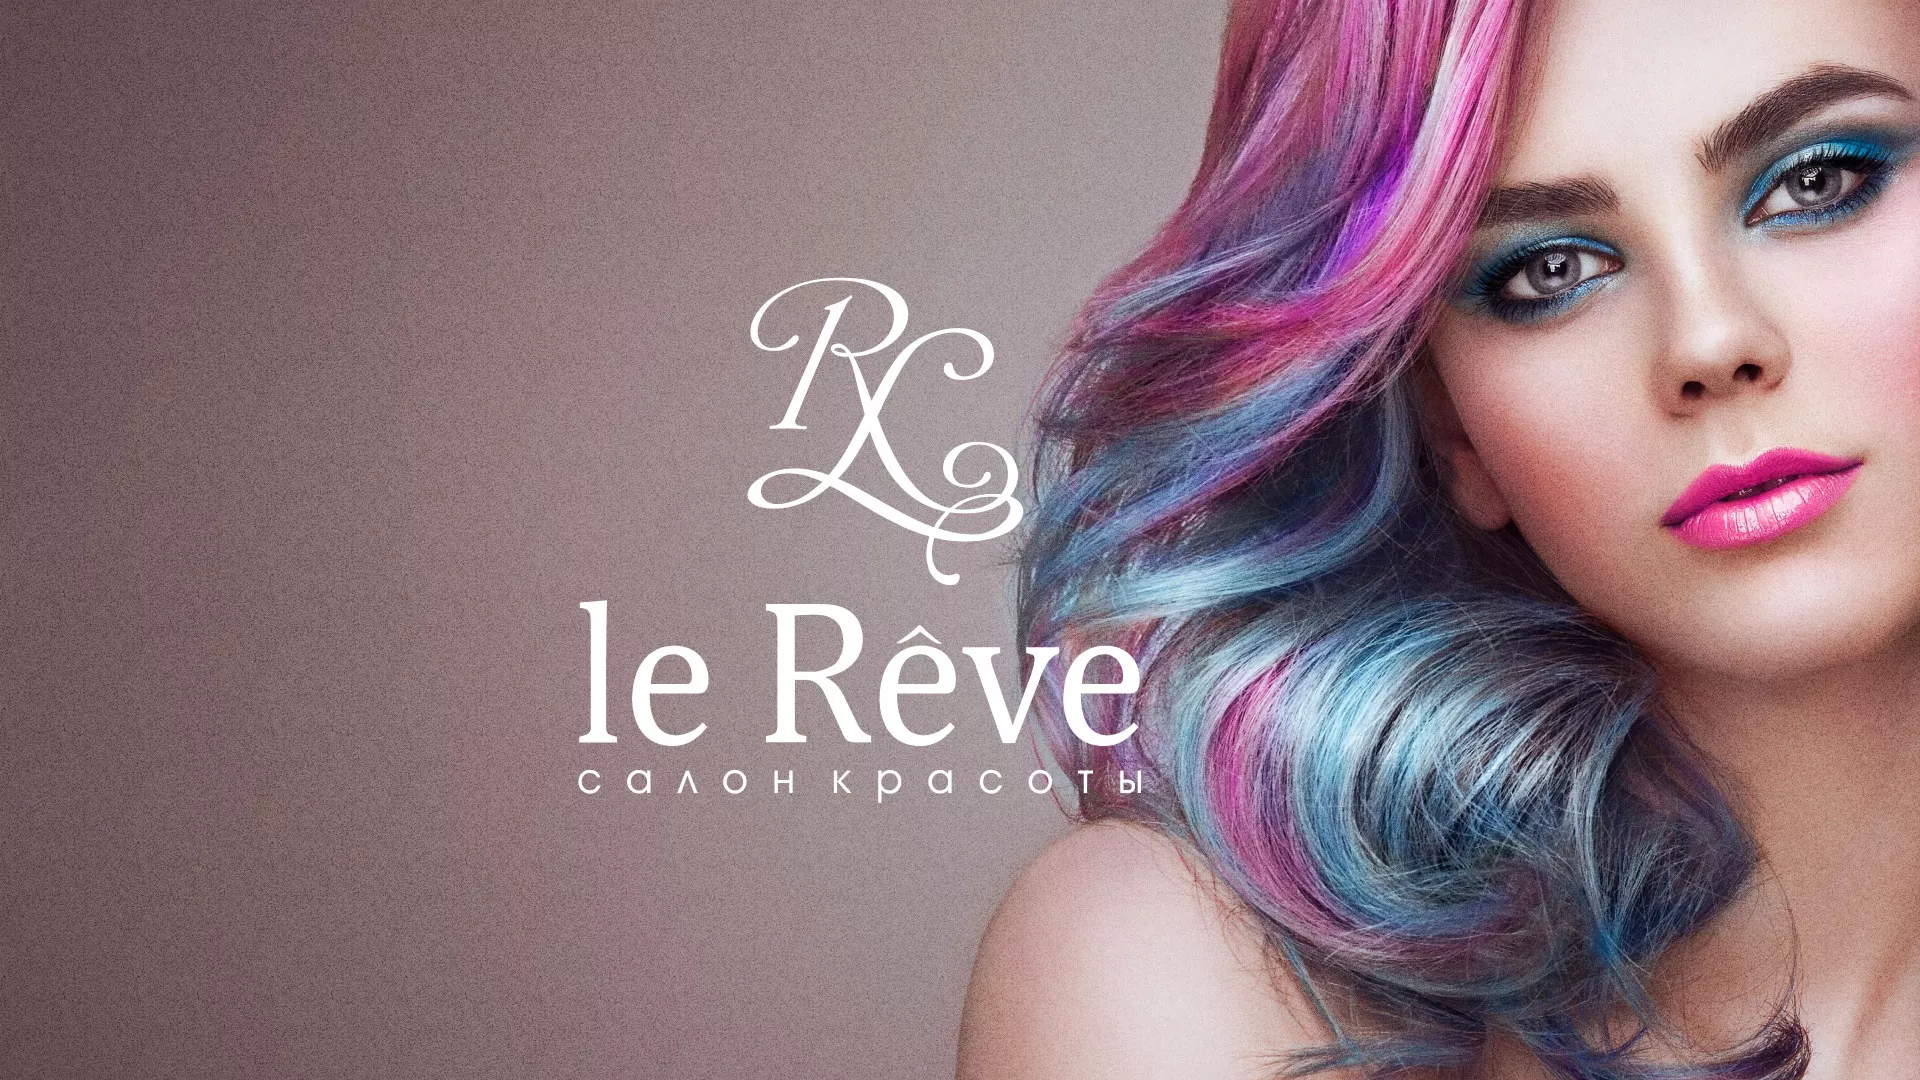 Создание сайта для салона красоты «Le Reve» в Шагонаре